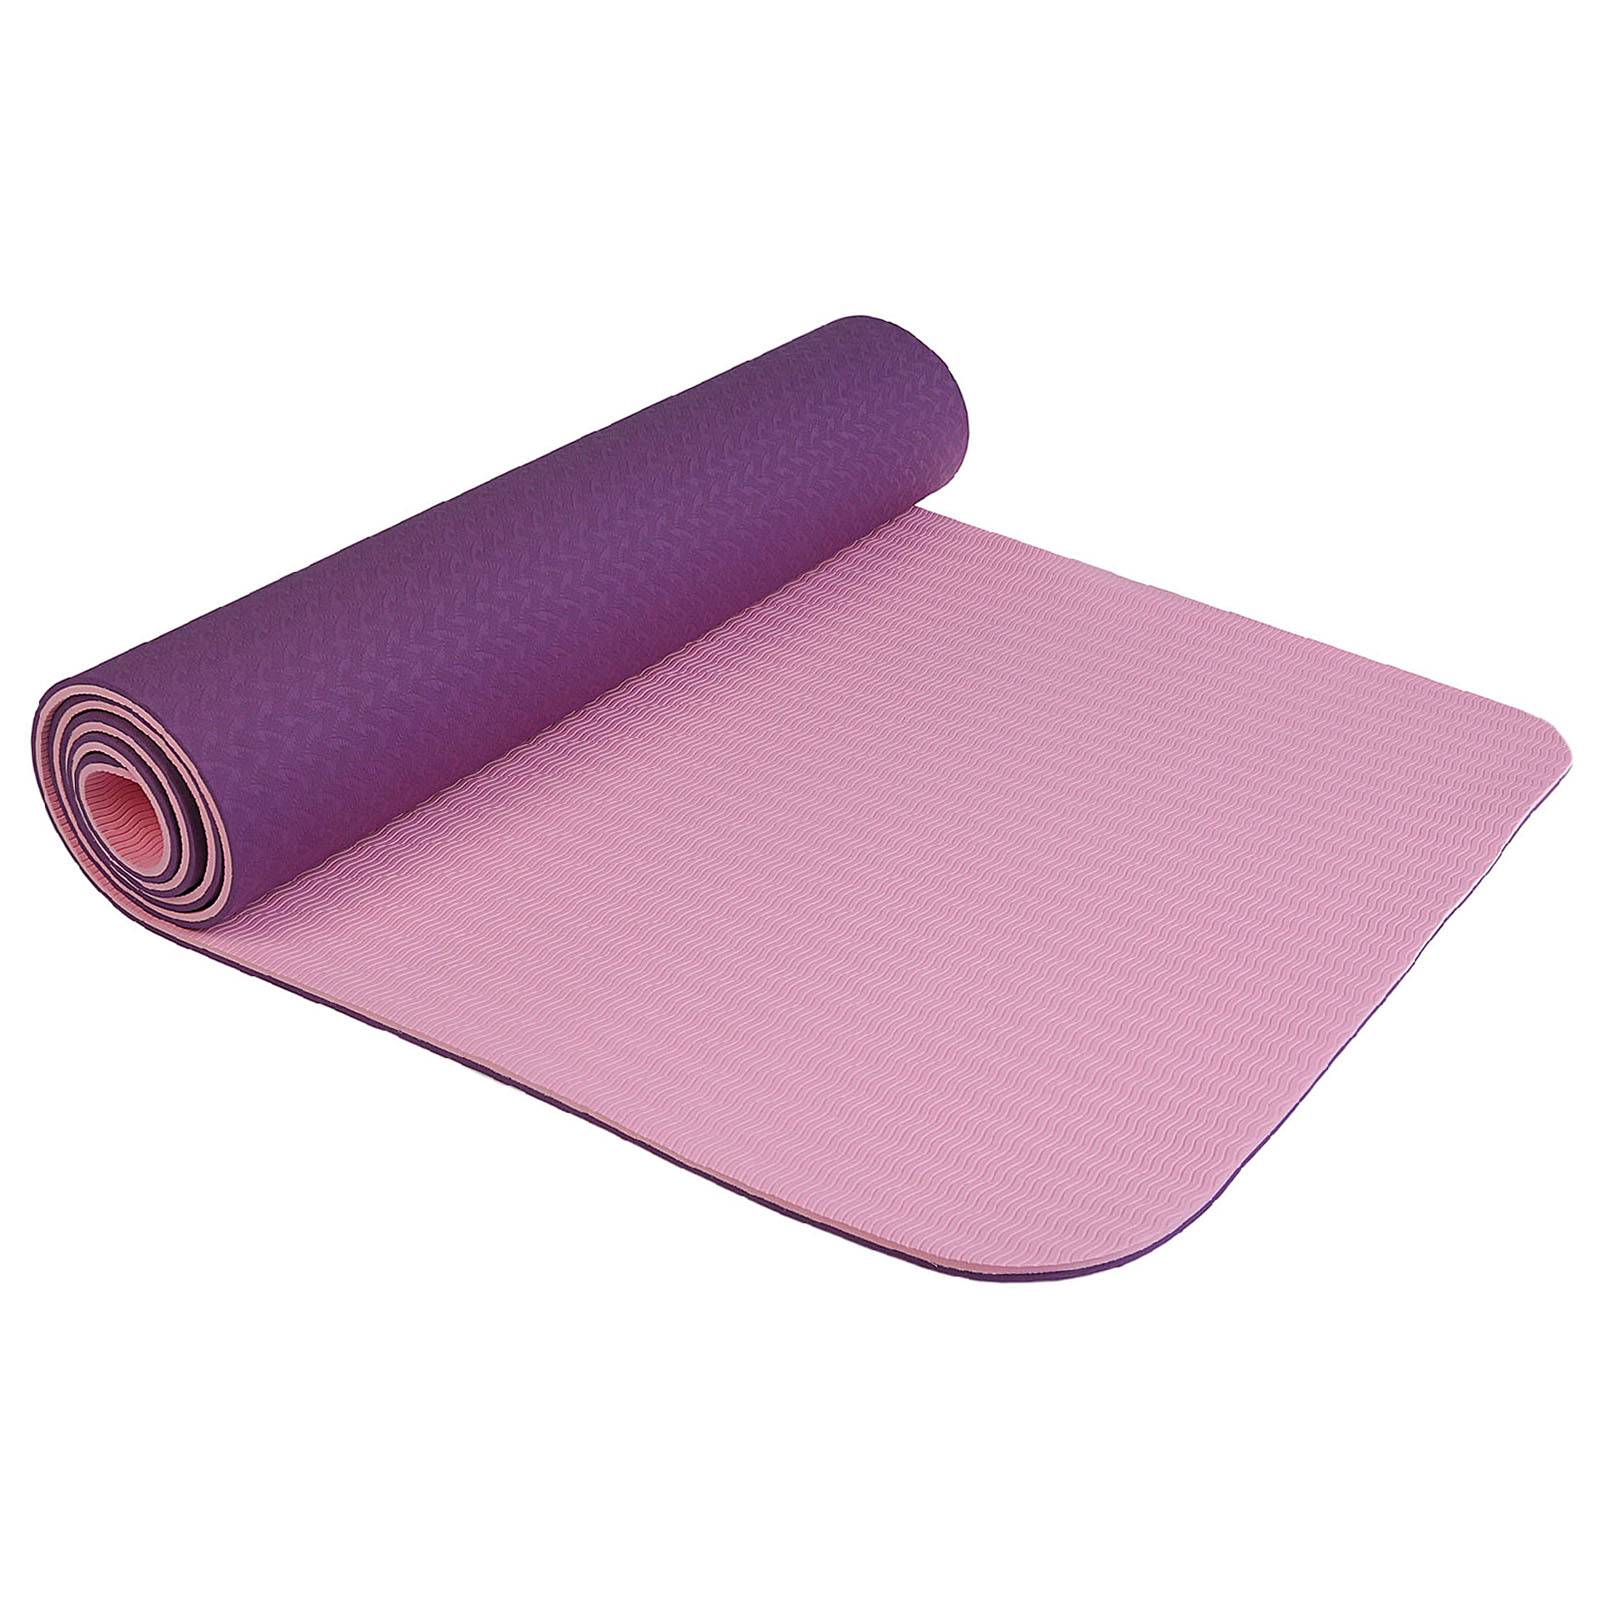 Коврик Sangh Для йоги двухцветный фиолетовый - фото 1